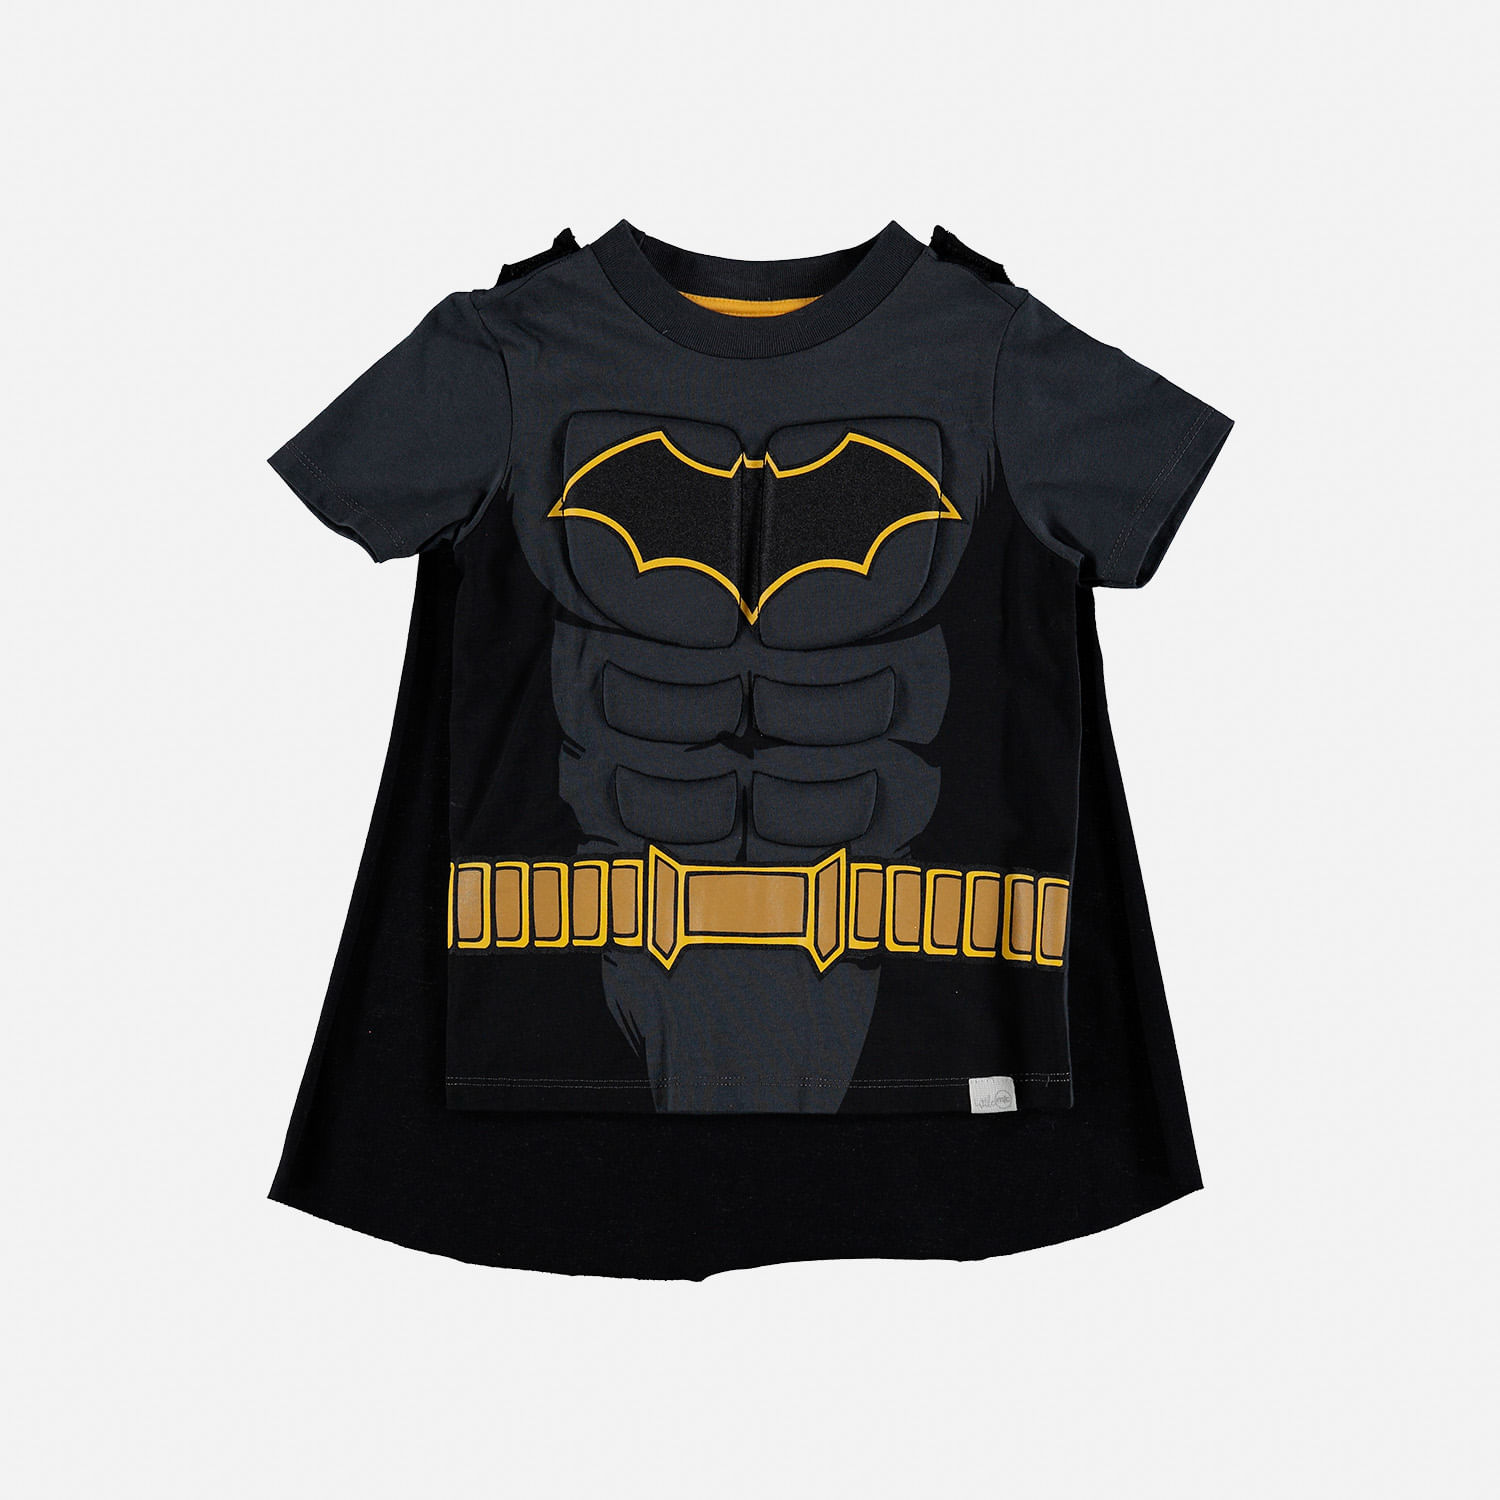 Camiseta de Batman con capa removible para niño de 2T a 5T - Tienda Online  MIC